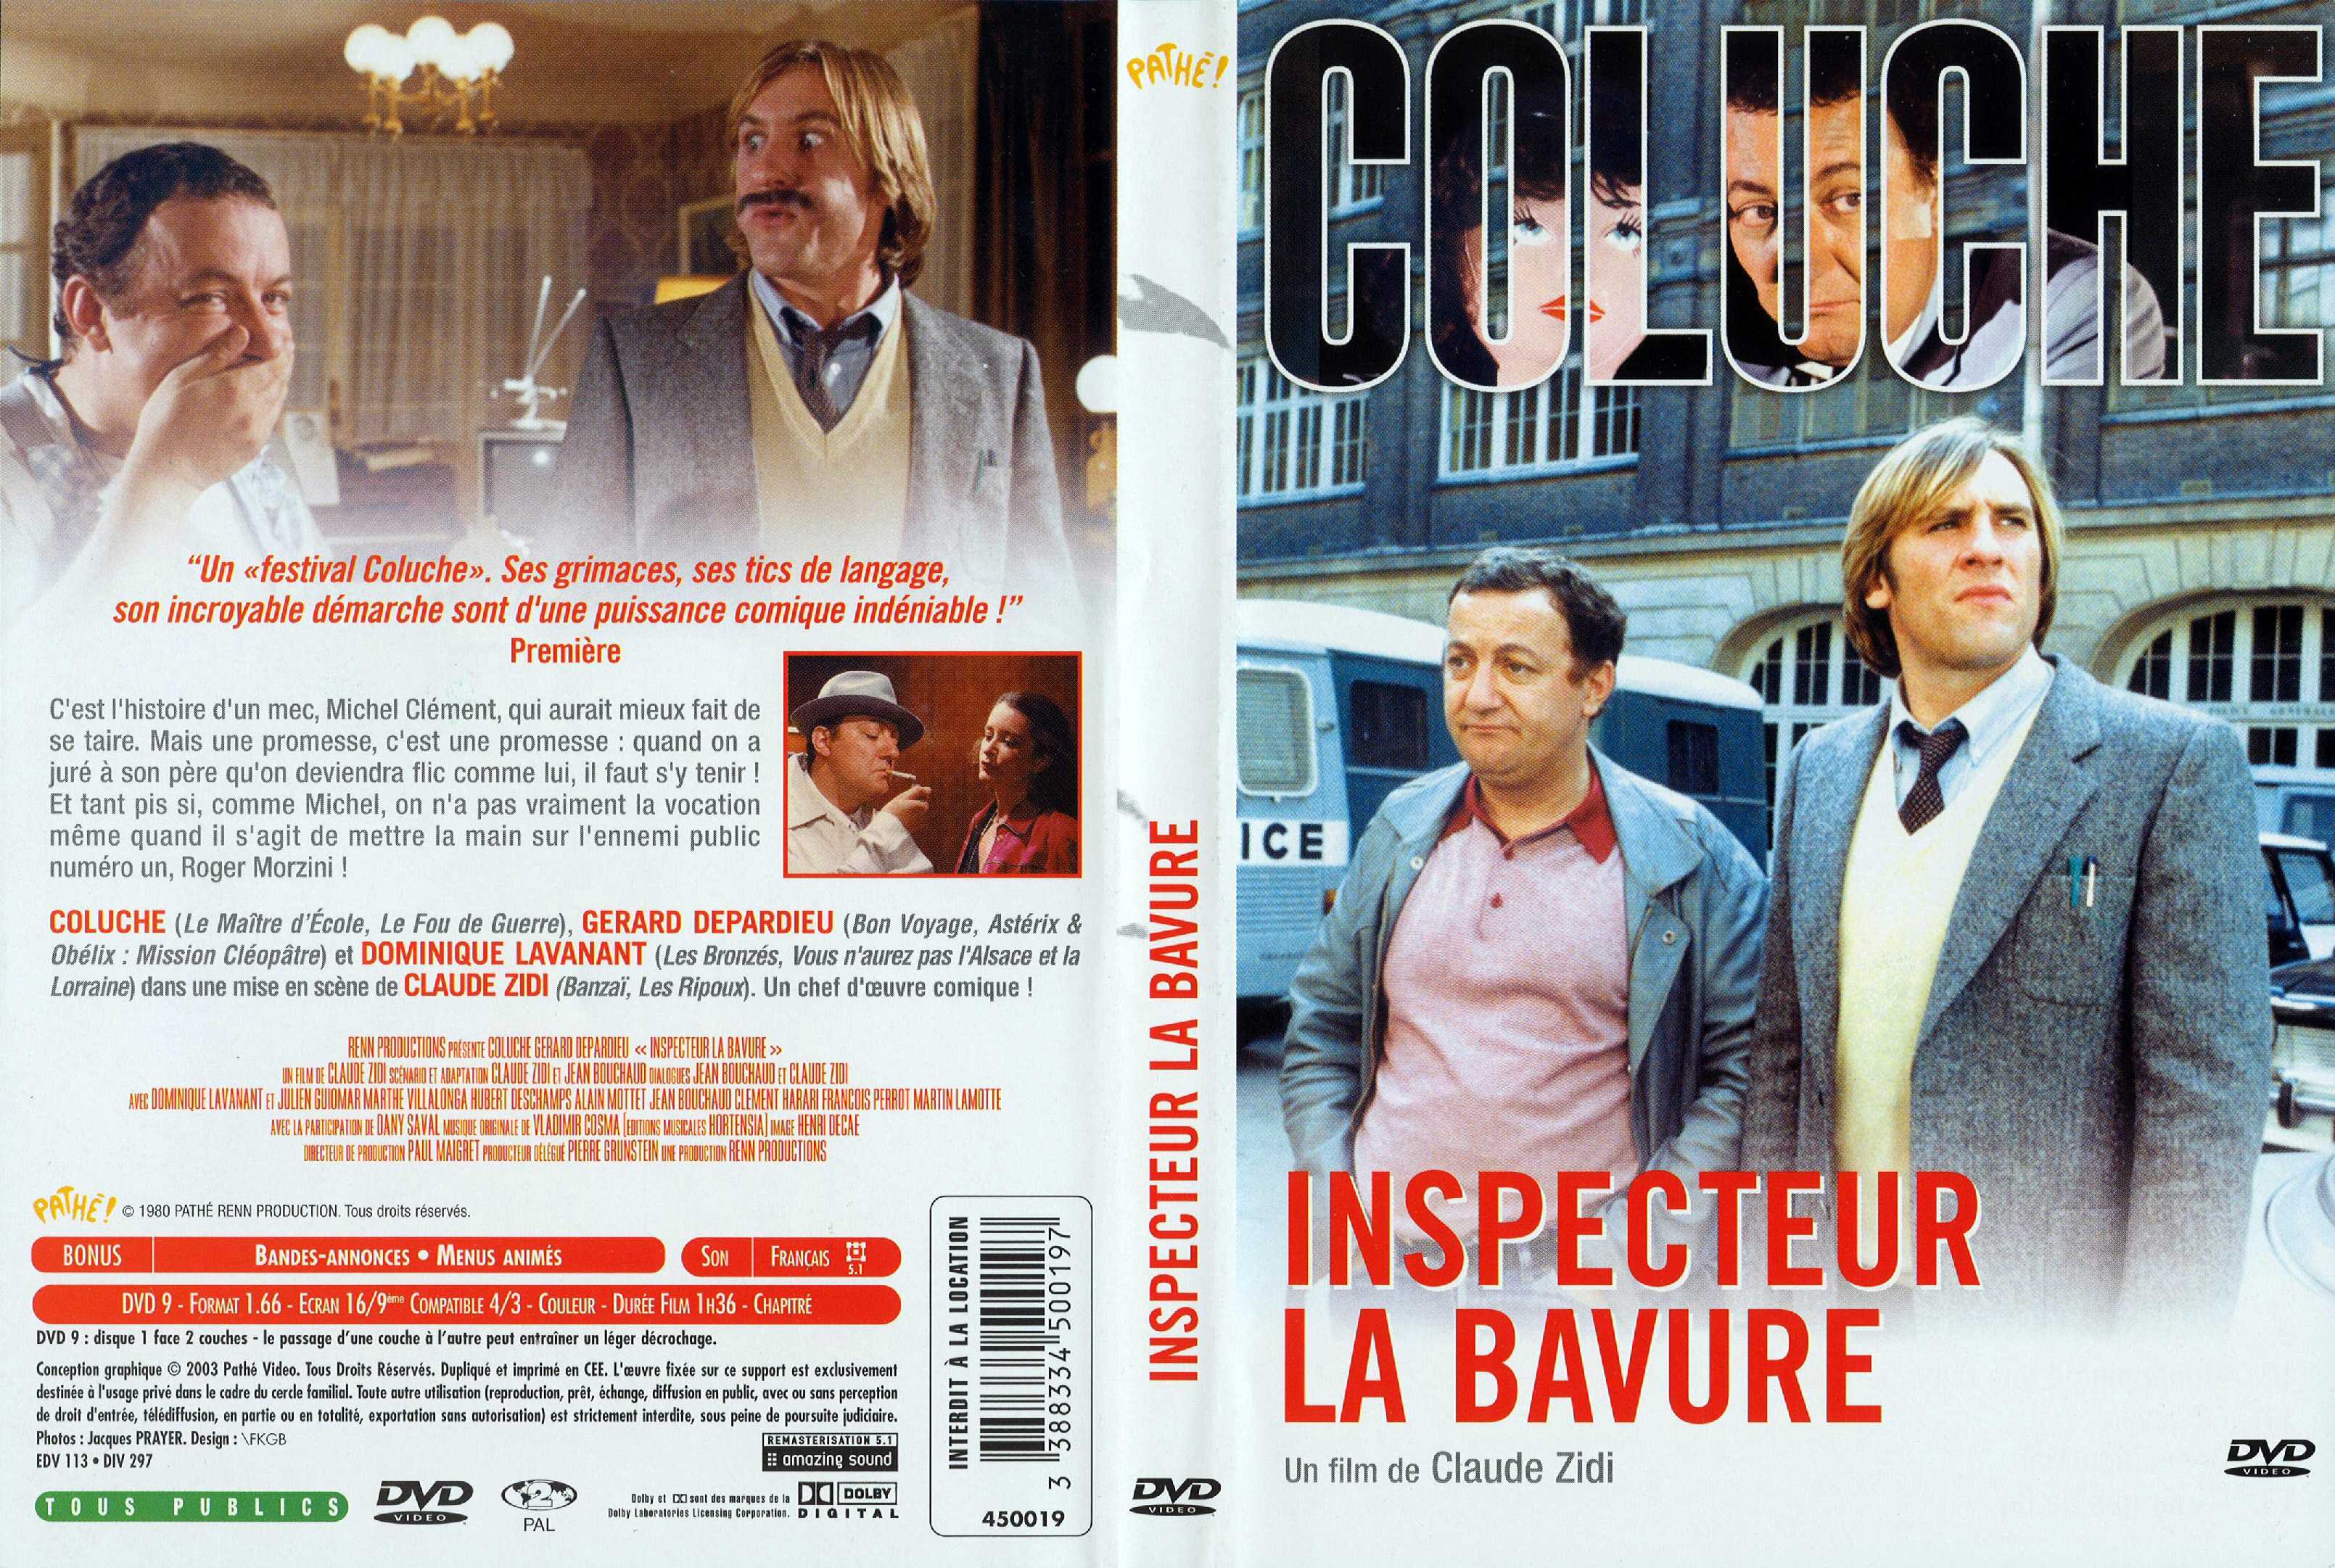 Jaquette DVD Inspecteur la bavure v2